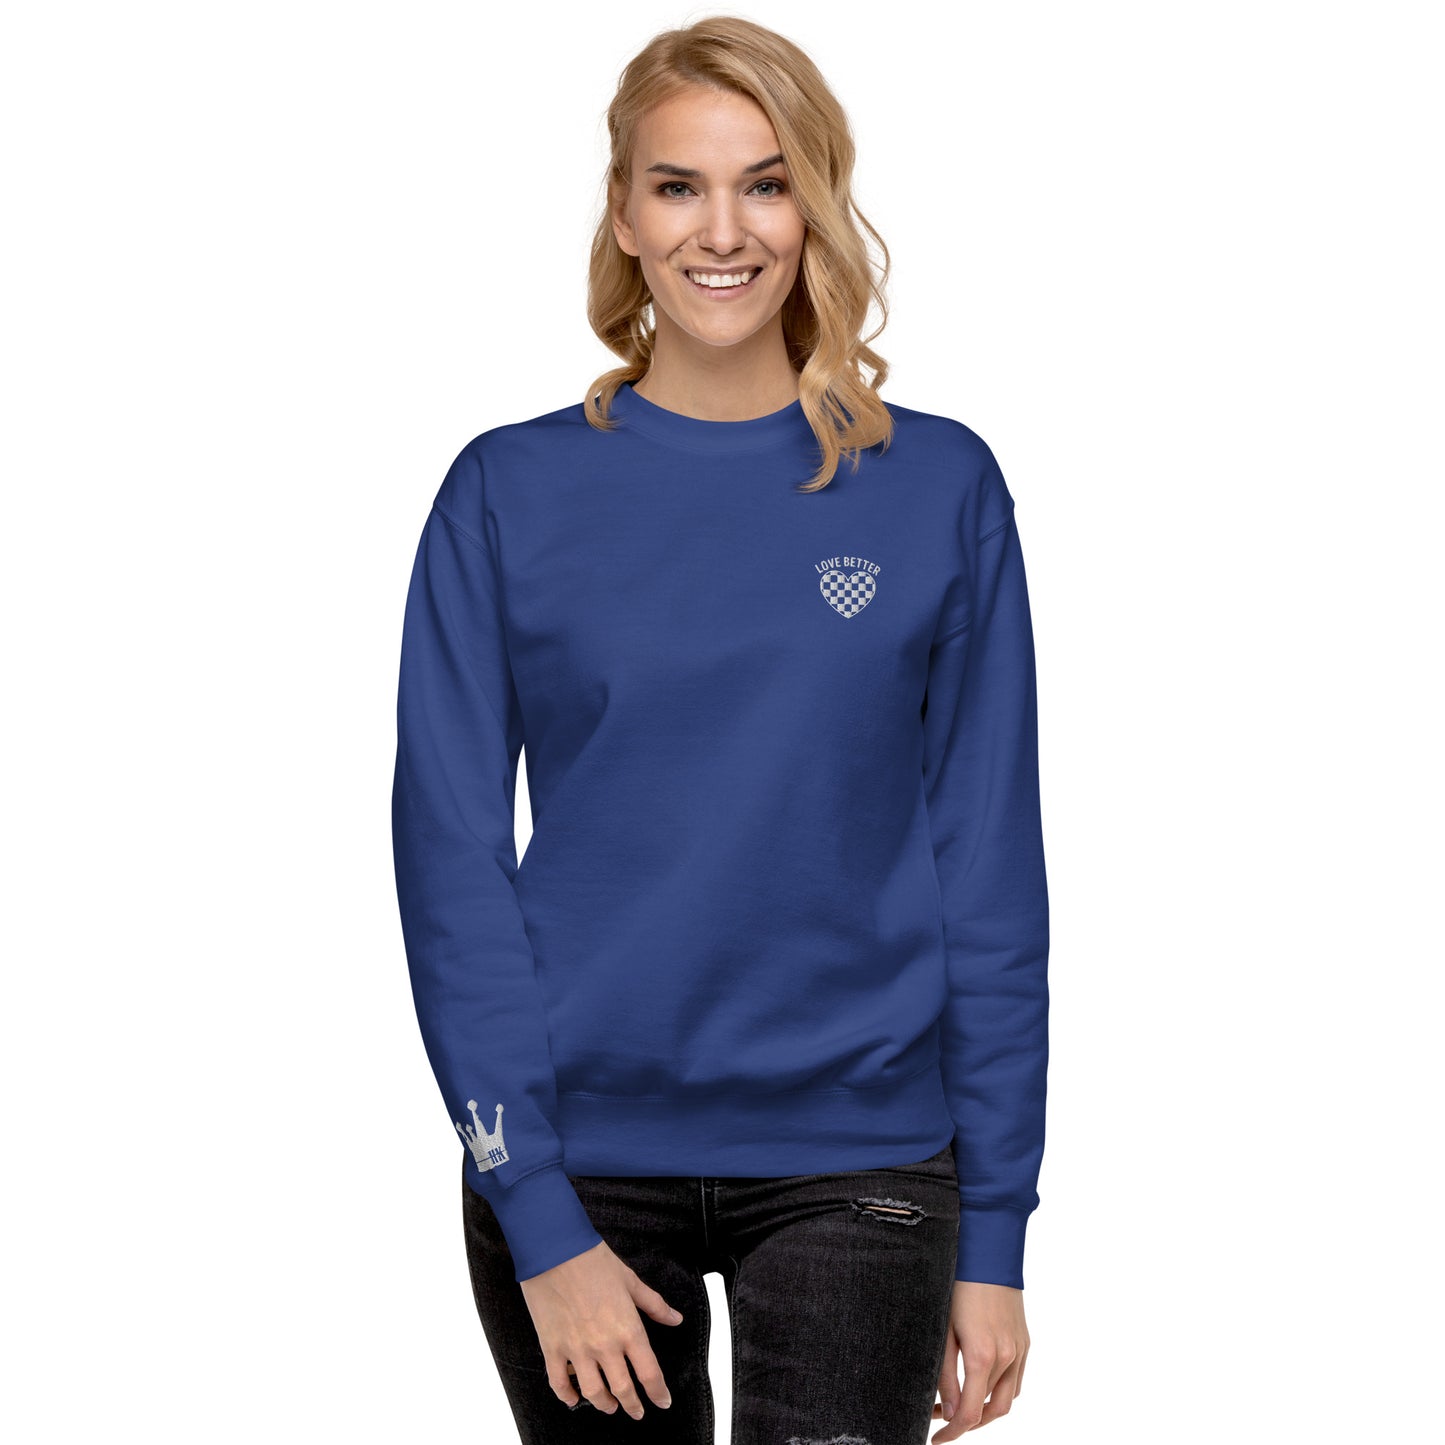 LOVE BETTER "STAPLE SWEAT" Unisex Premium Sweatshirt